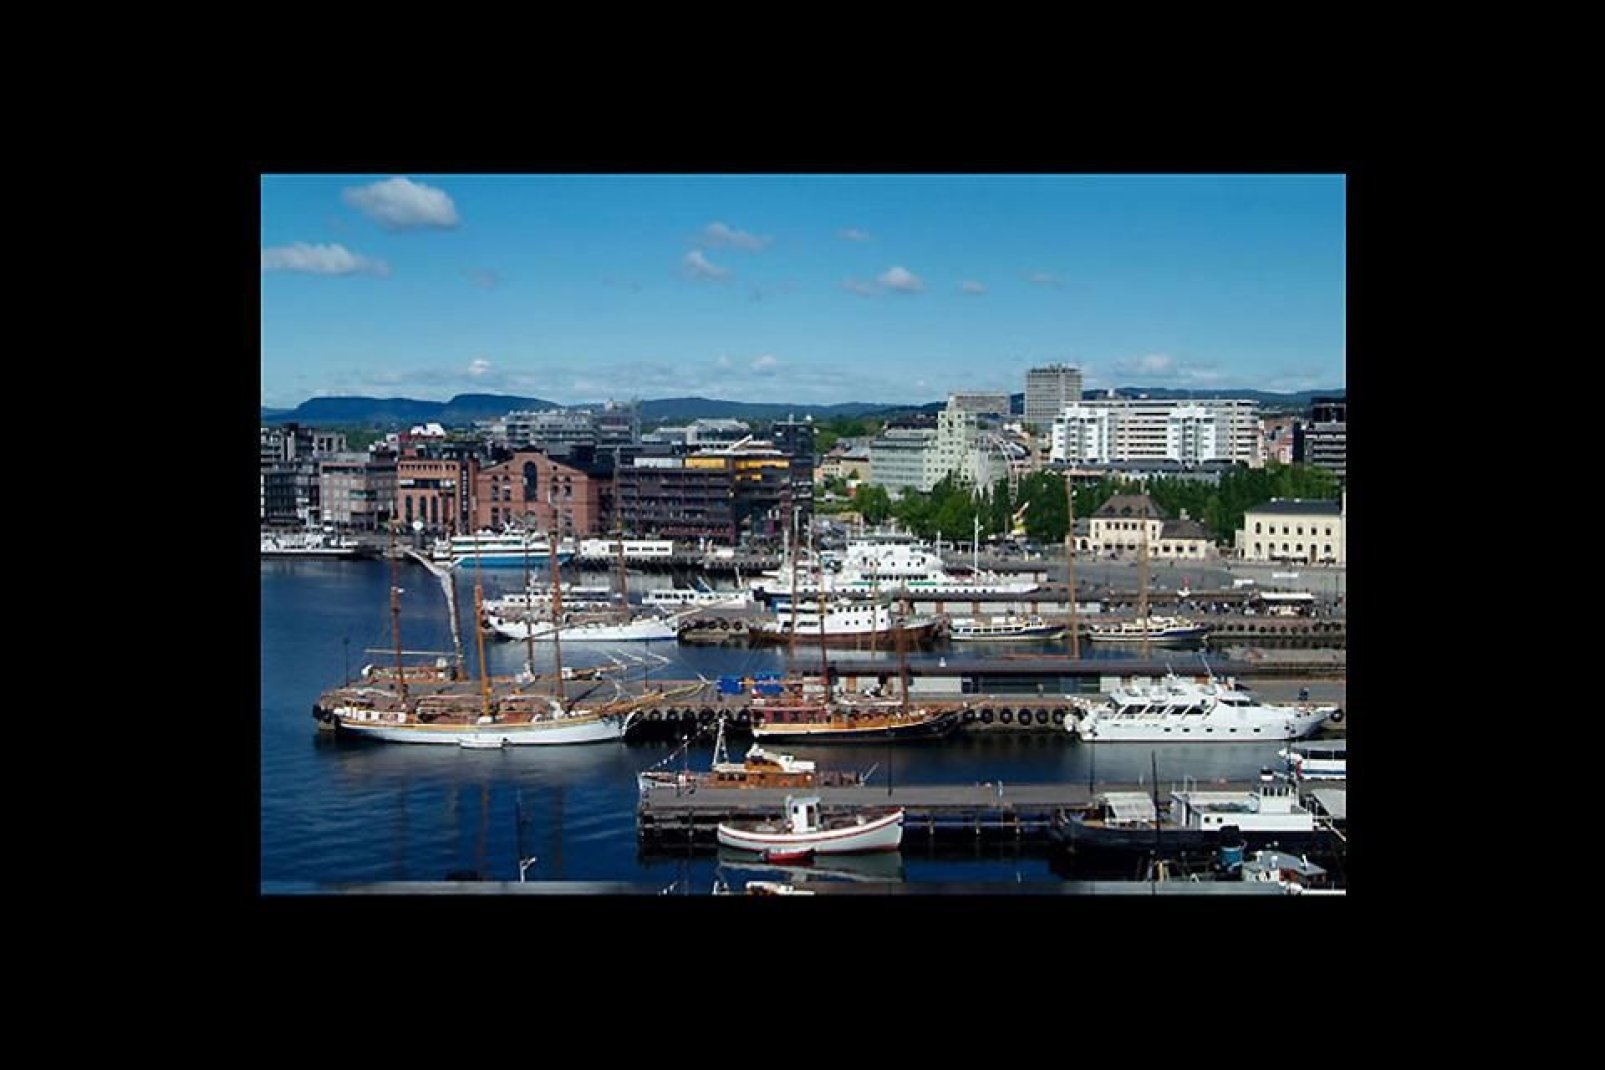 El puerto de Oslo se halla a orillas del fiordo de Oslo.